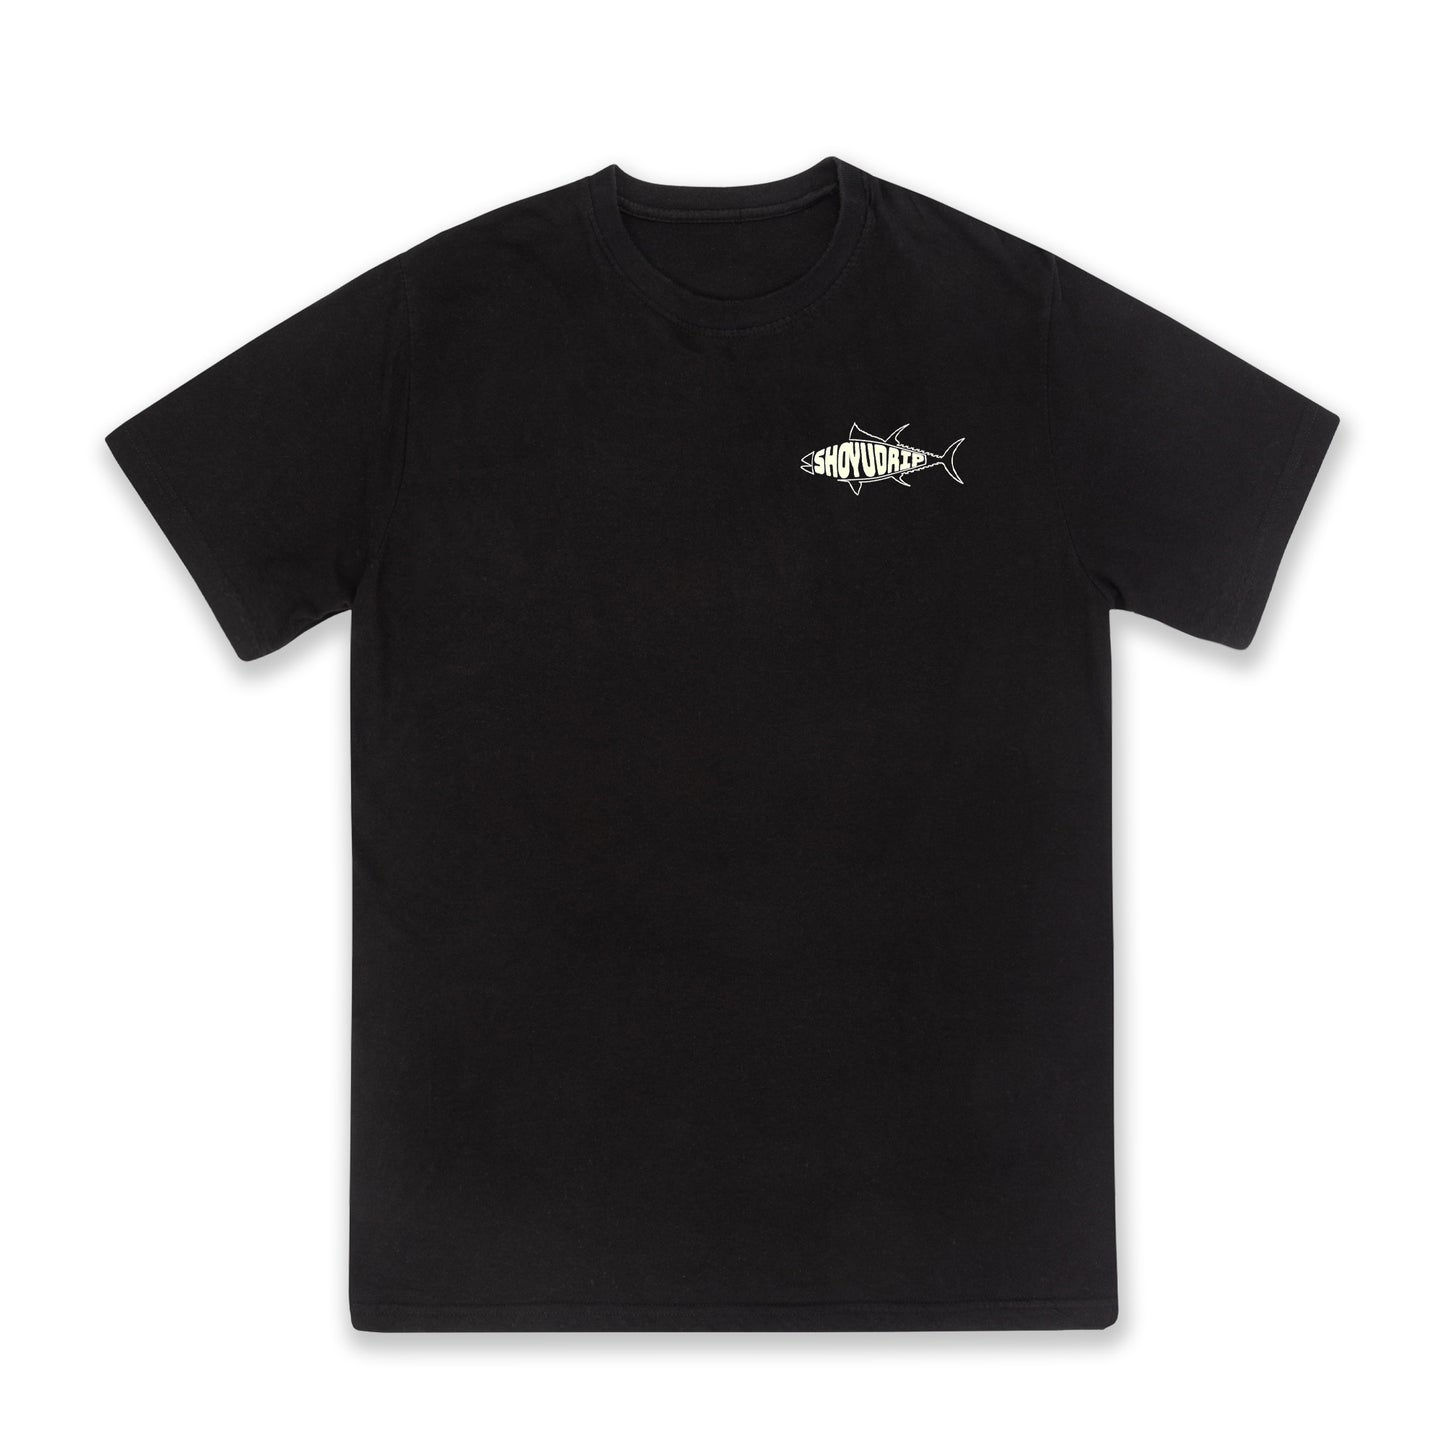 Tsukiji Black Cotton T-Shirt